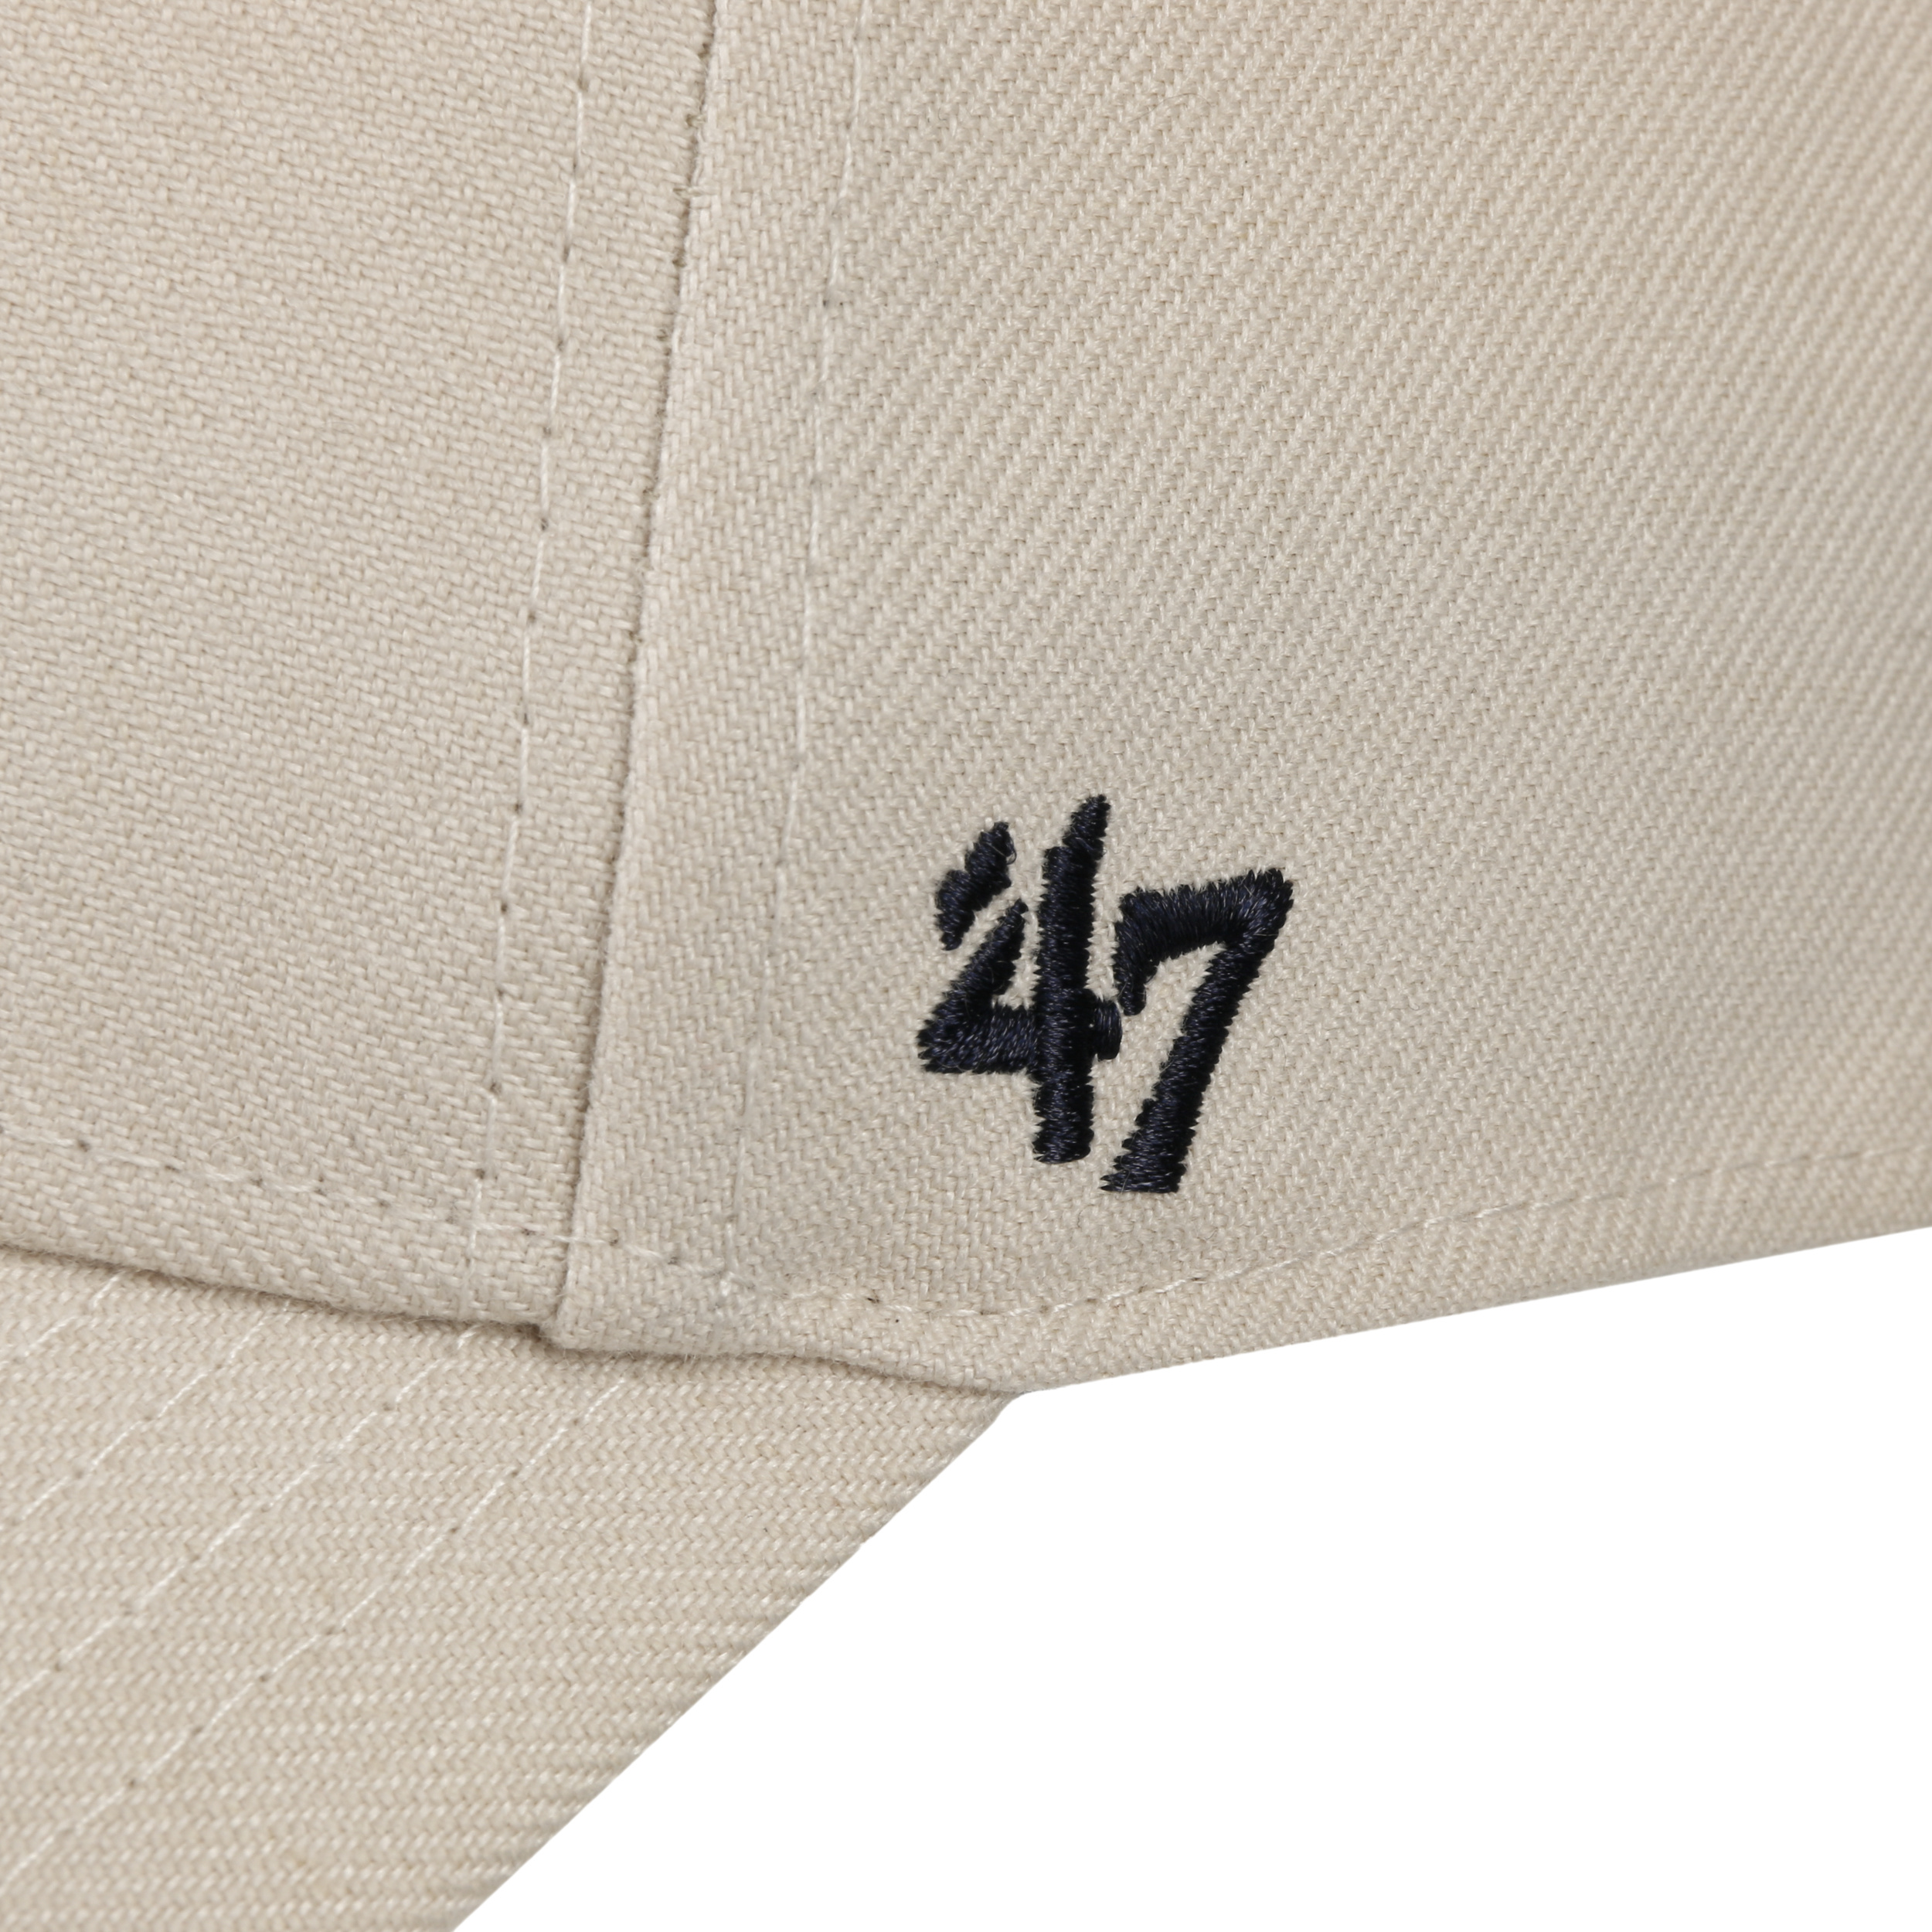 MVP Yankees Bone Cap by 47 Brand